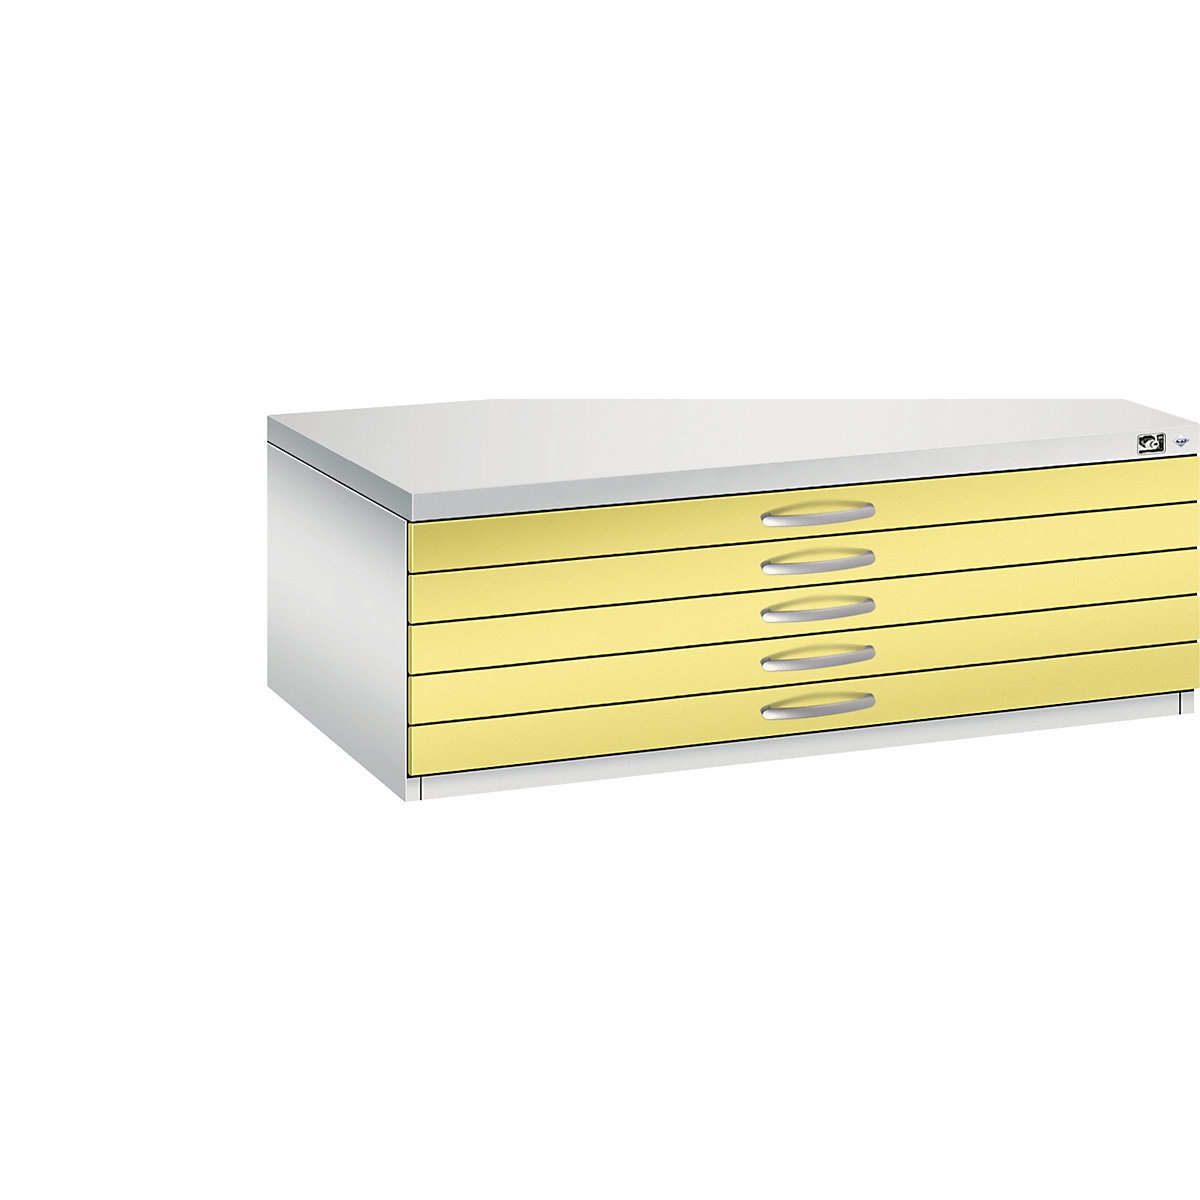 Skříň na výkresy – C+P, DIN A1, 5 zásuvek, výška 420 mm, světlá šedá / sírová žlutá-17